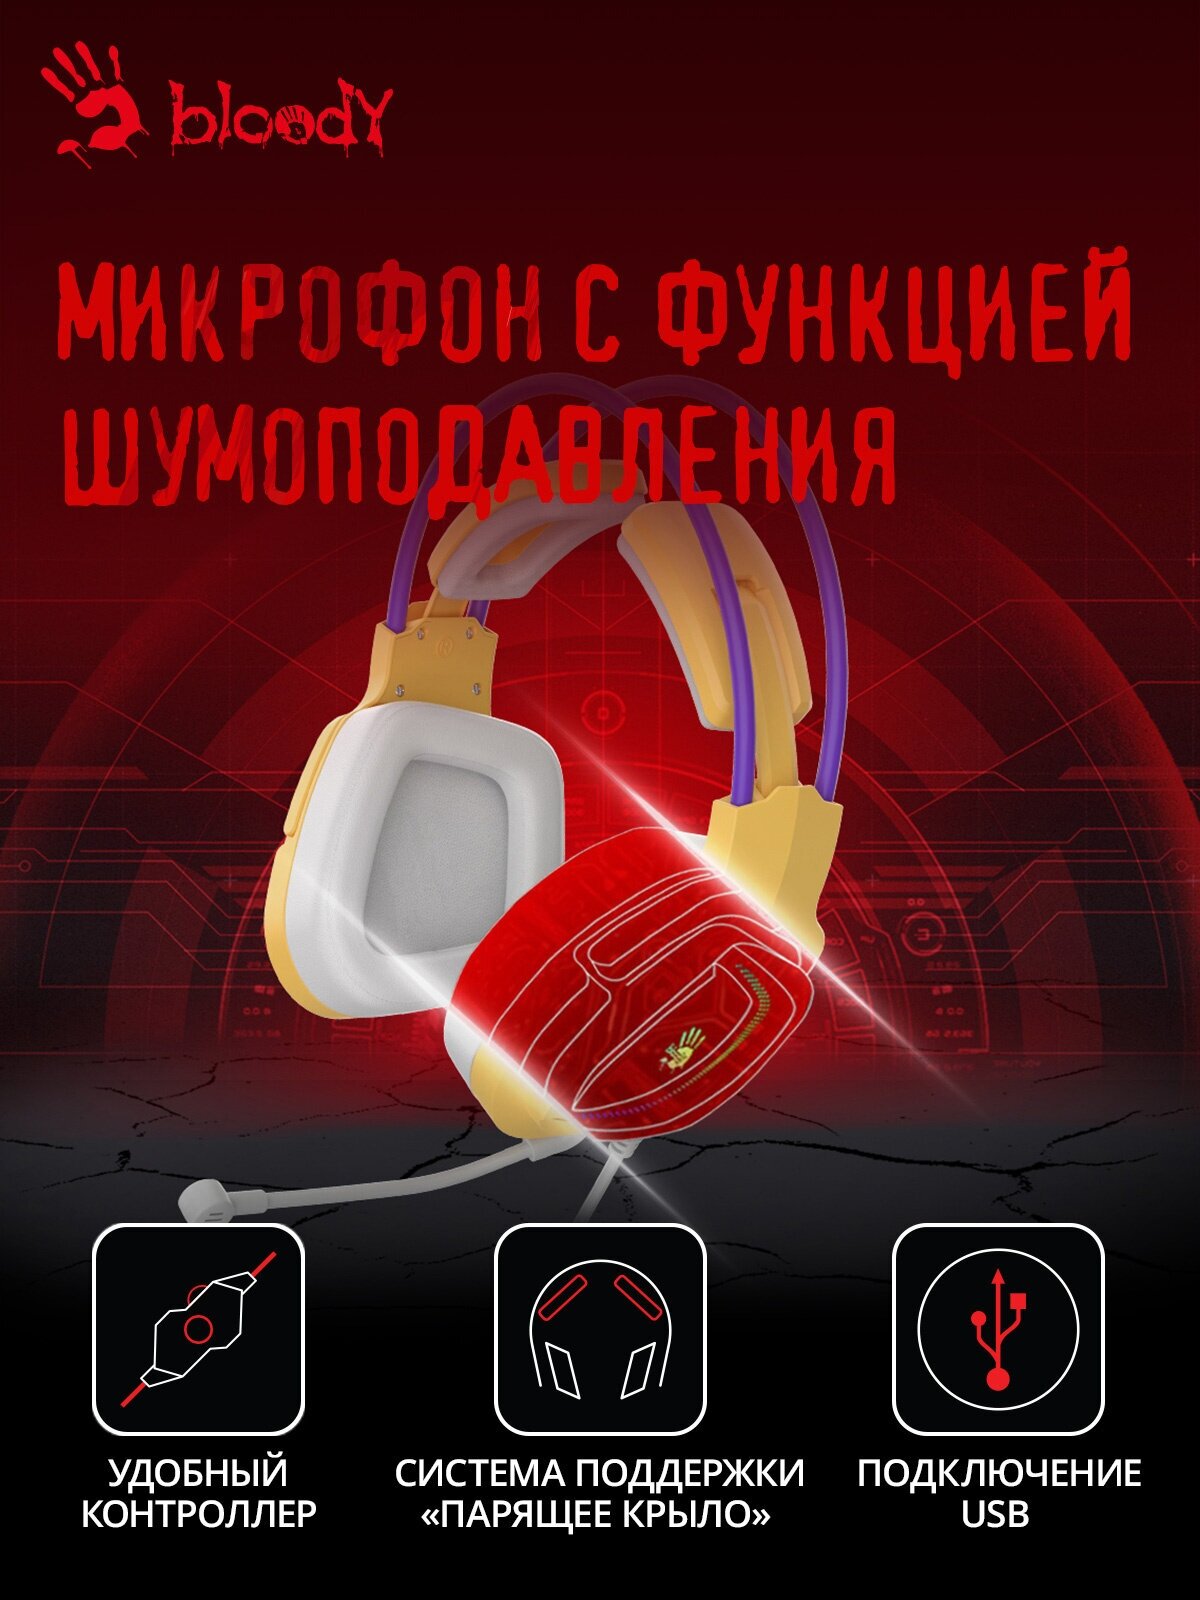 Наушники с микрофоном A4Tech Bloody G575 желтый/фиолетовый (G575 /ROYAL VIOLET/ USB)